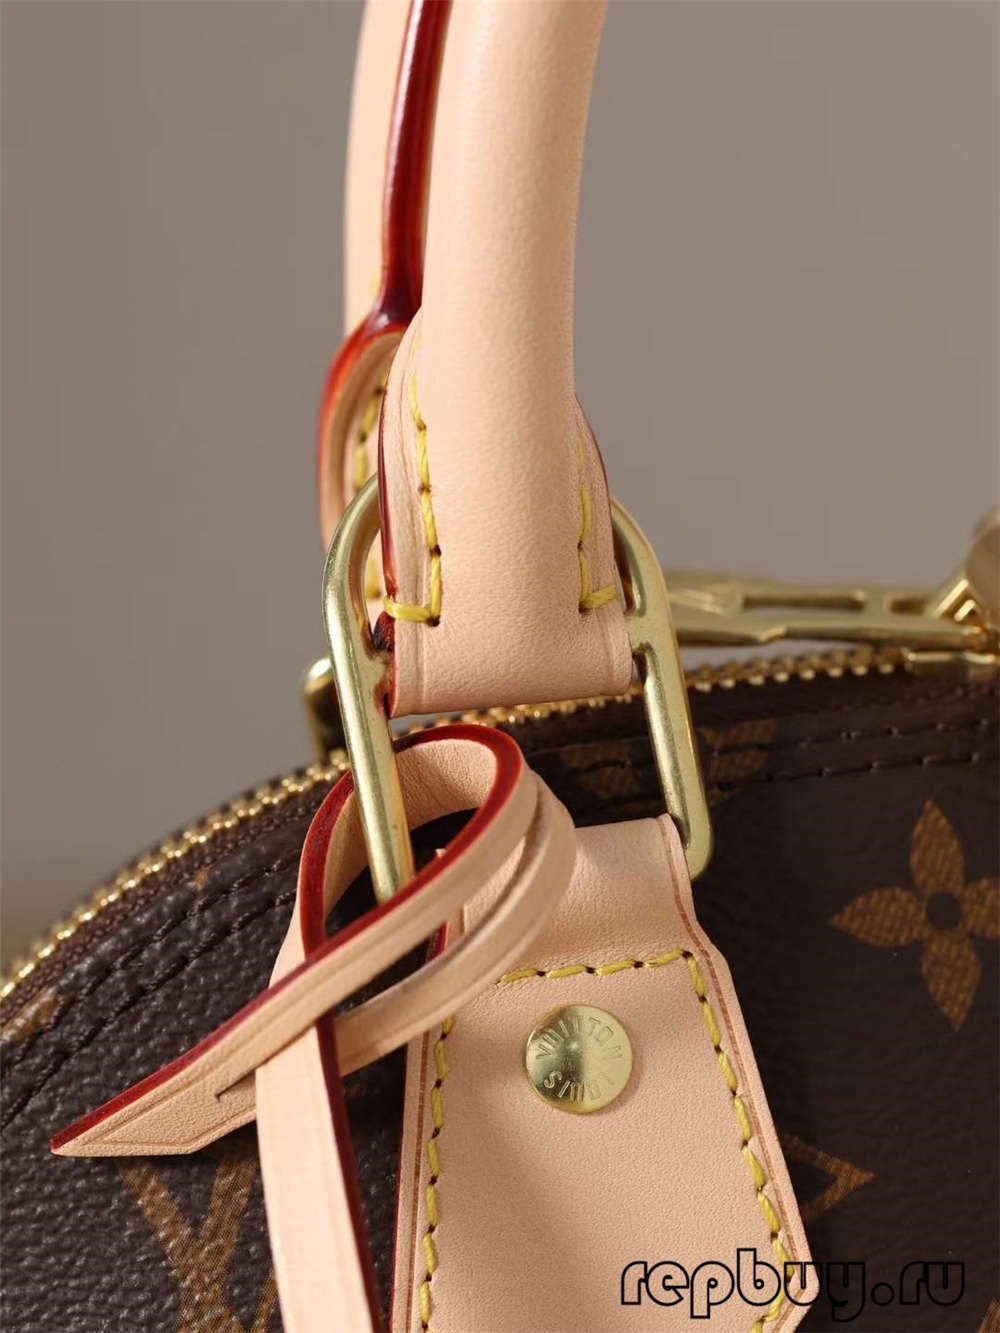 Louis Vuitton M53152 Alma BB תיקי העתק באיכות מעולה (2022 אחרונות)-האיכות הטובה ביותר מזויפת לואי ויטון תיק חנות מקוונת, העתק תיק מעצב ru